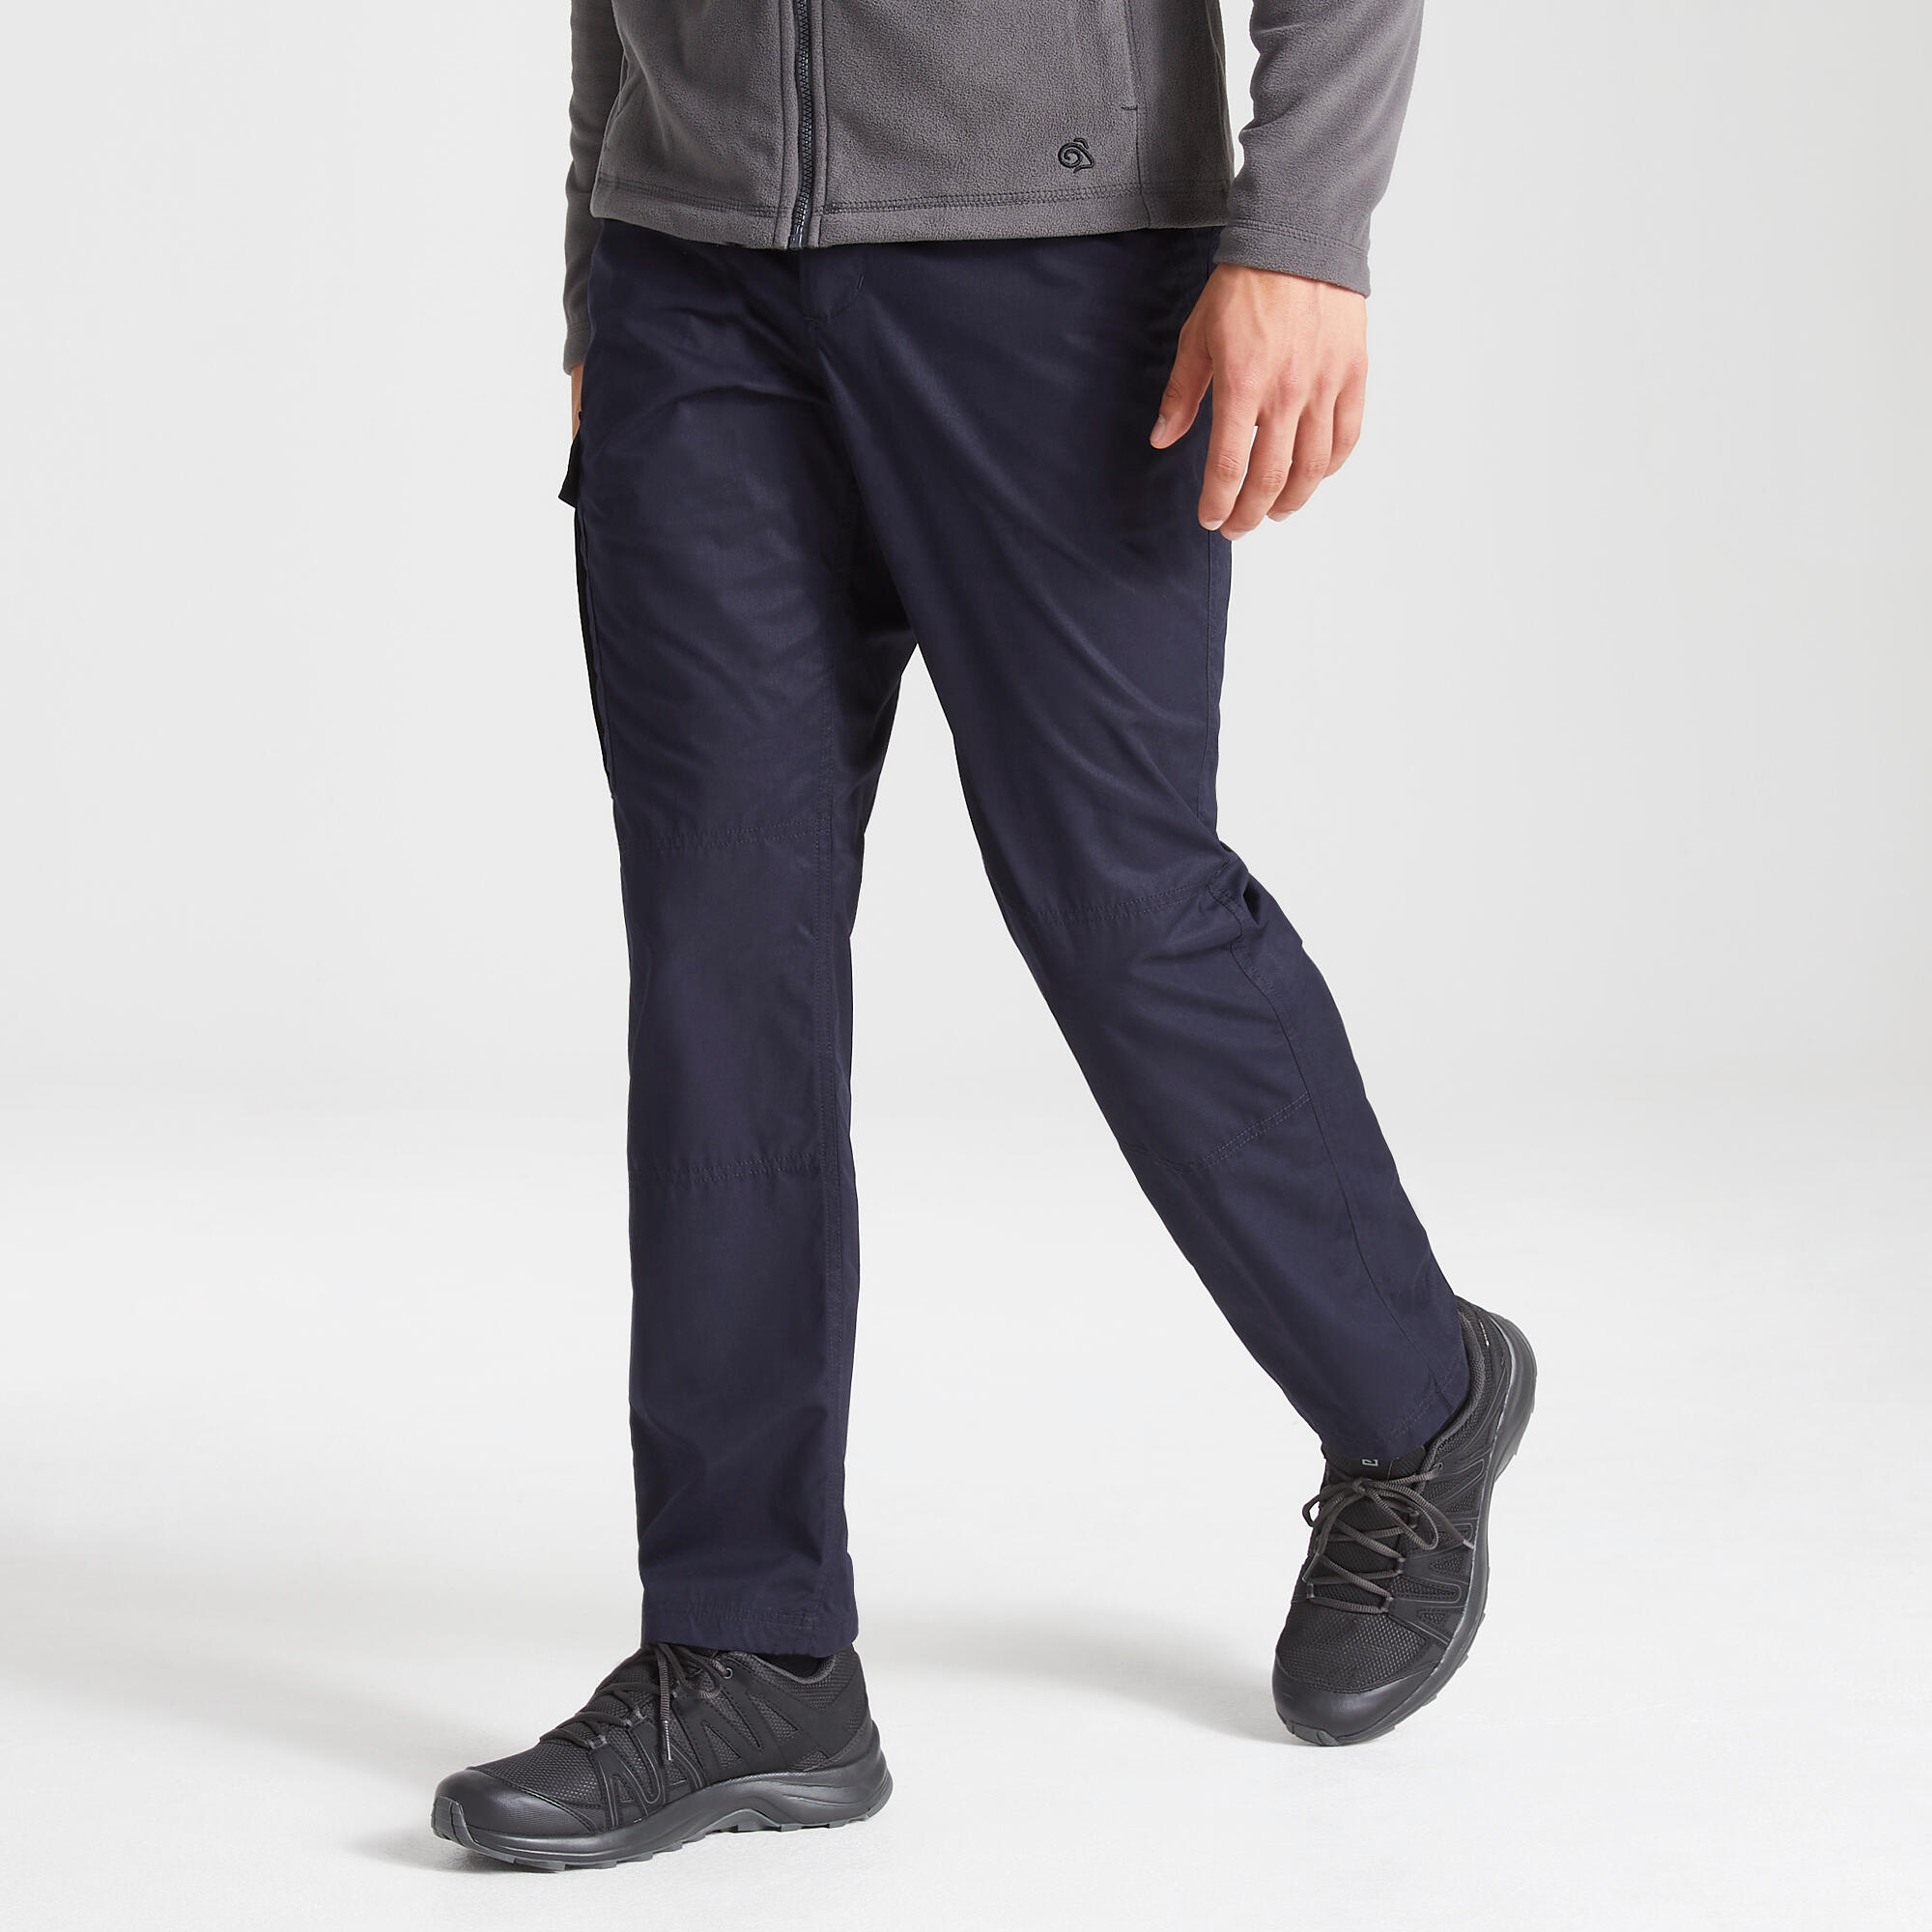 Men's Expert Kiwi Tailored Trousers 5/5